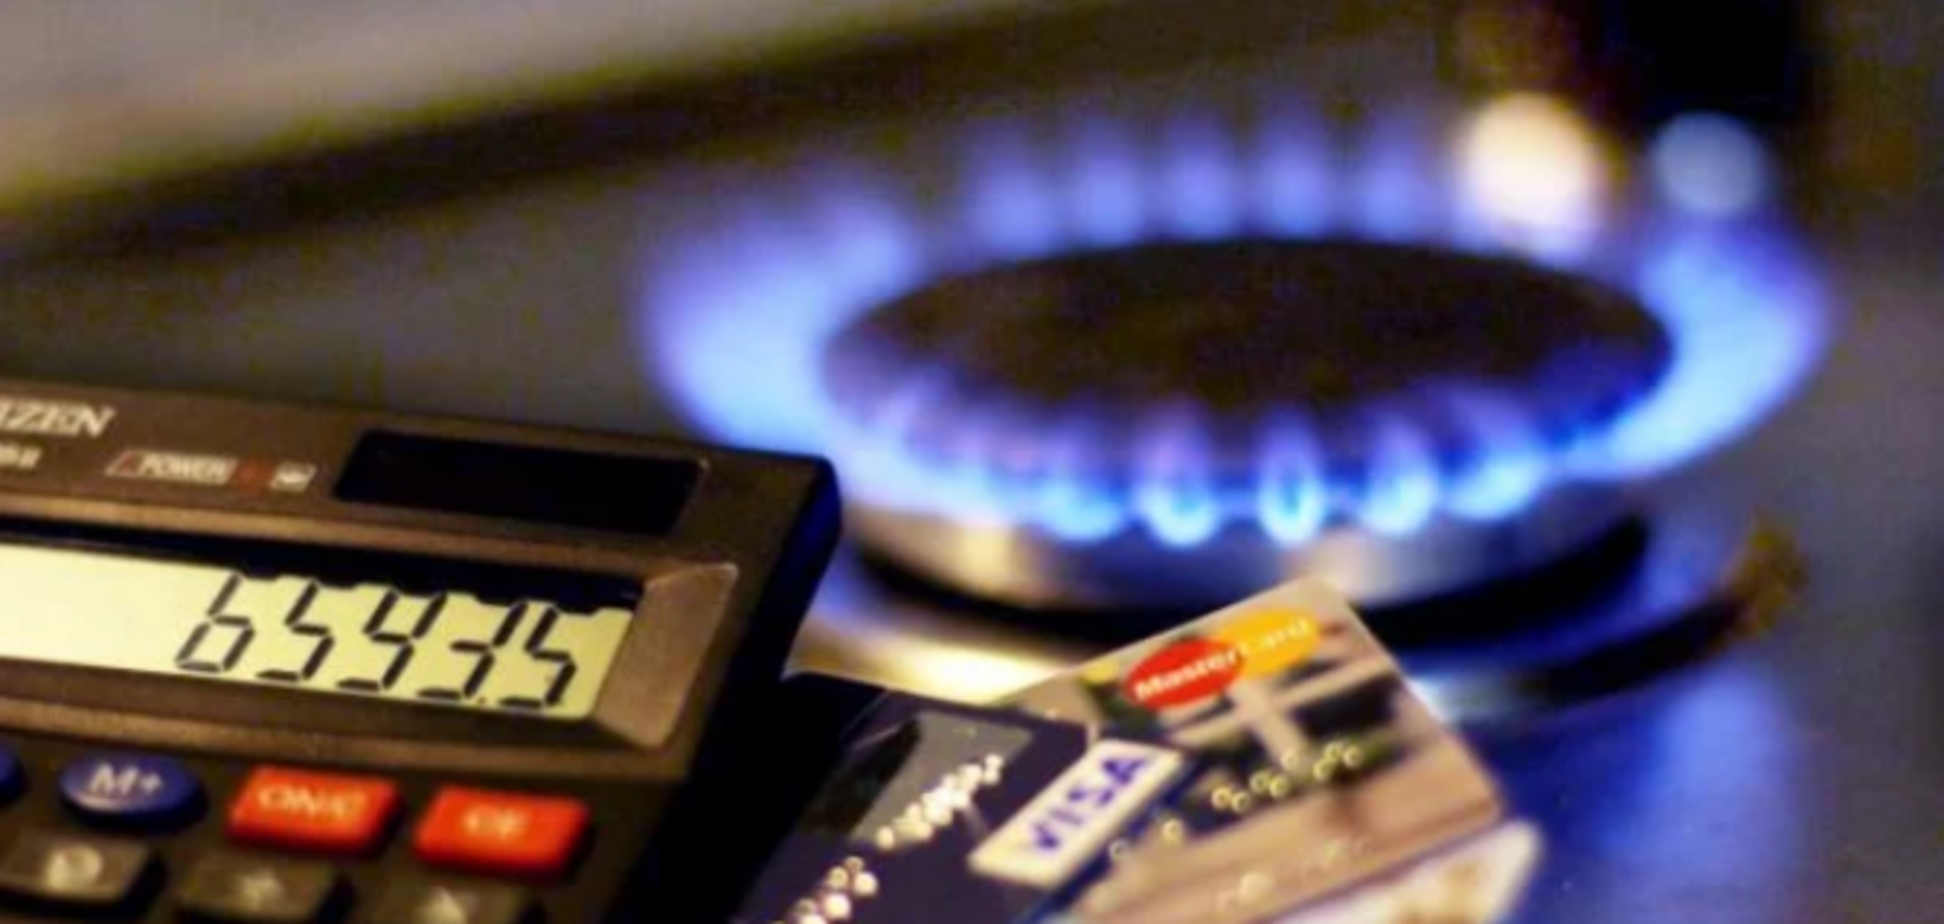 Категоричне ні: українці визнали непідйомною нову ціну на газ